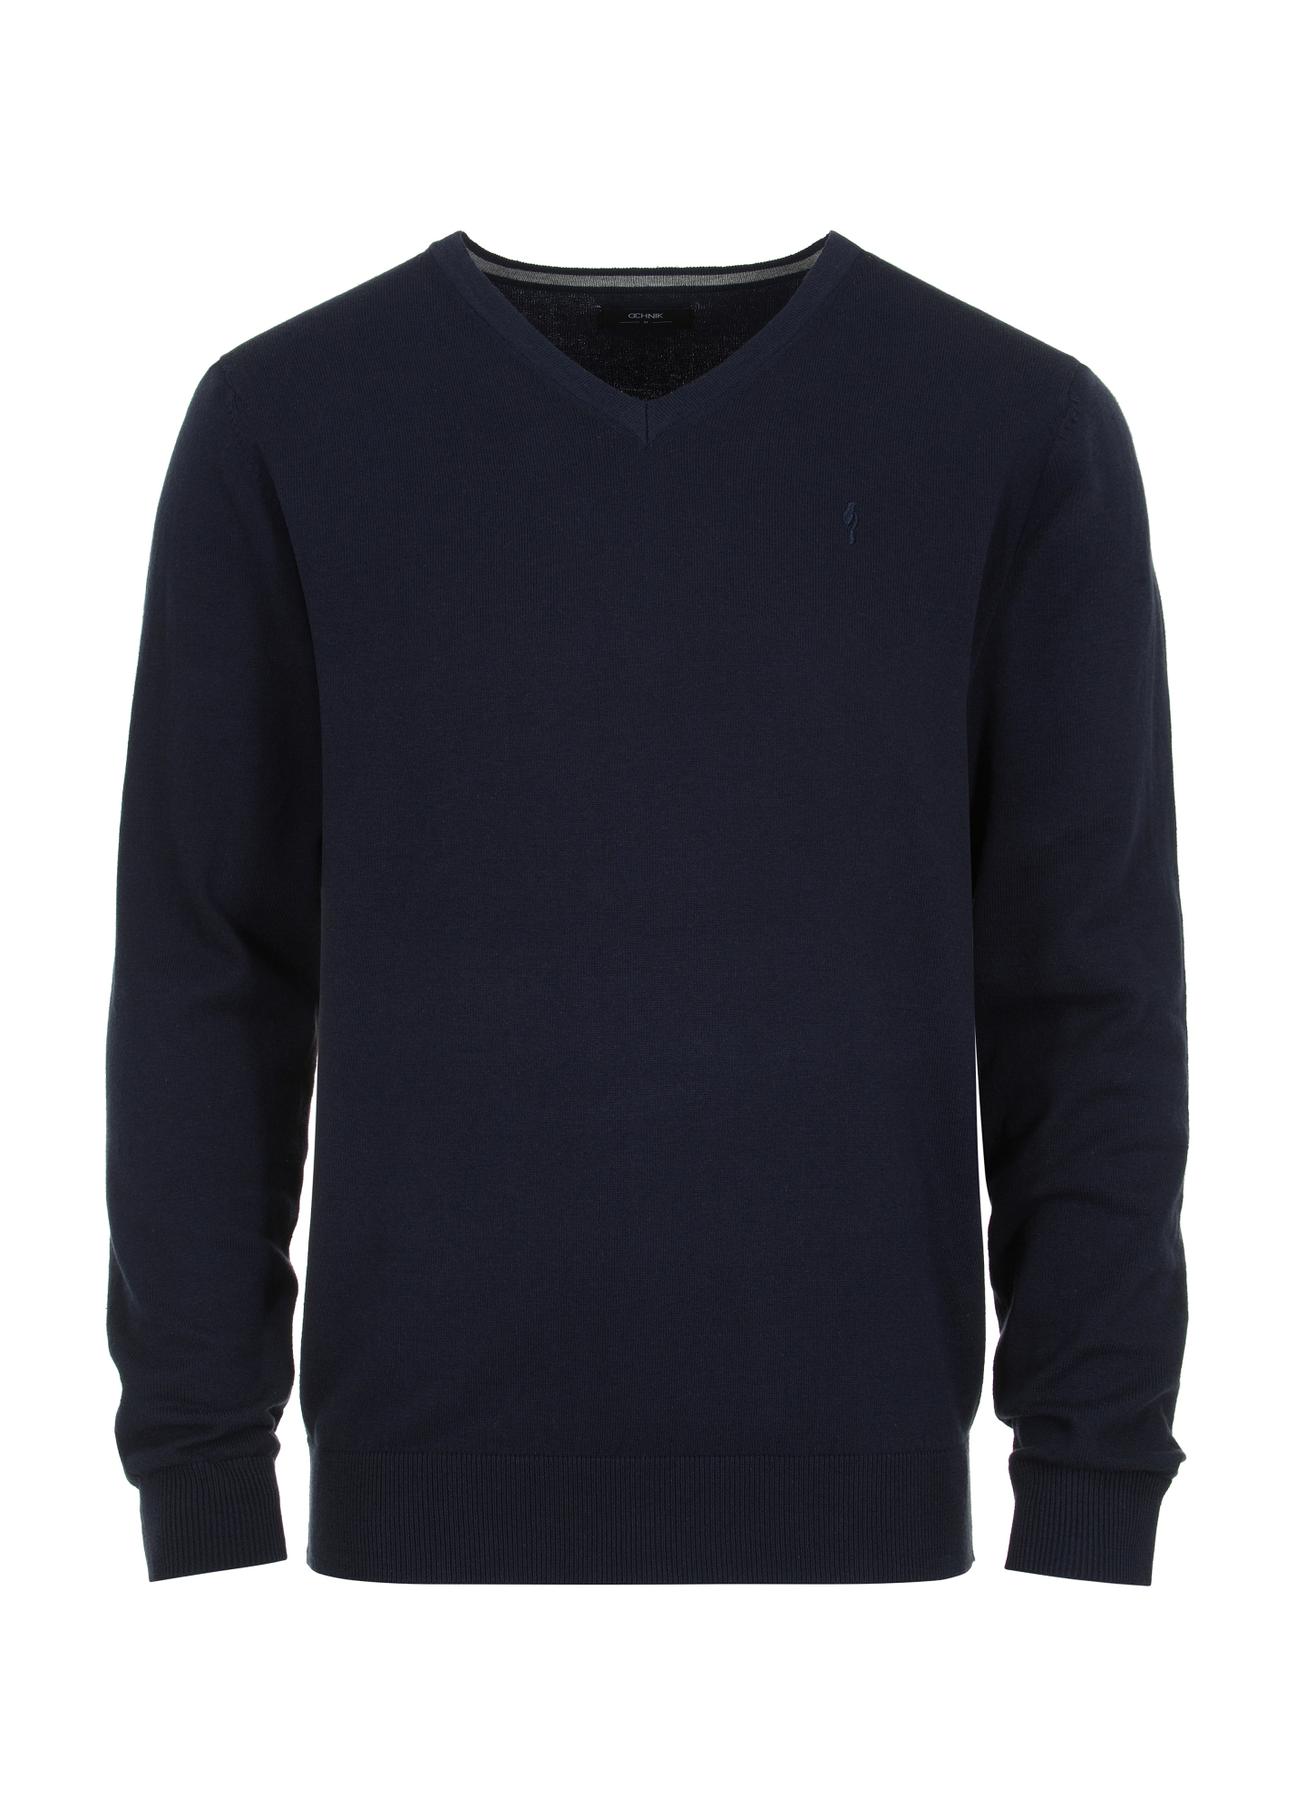 Granatowy sweter męski w serek SWEMT-0136-69(Z23)